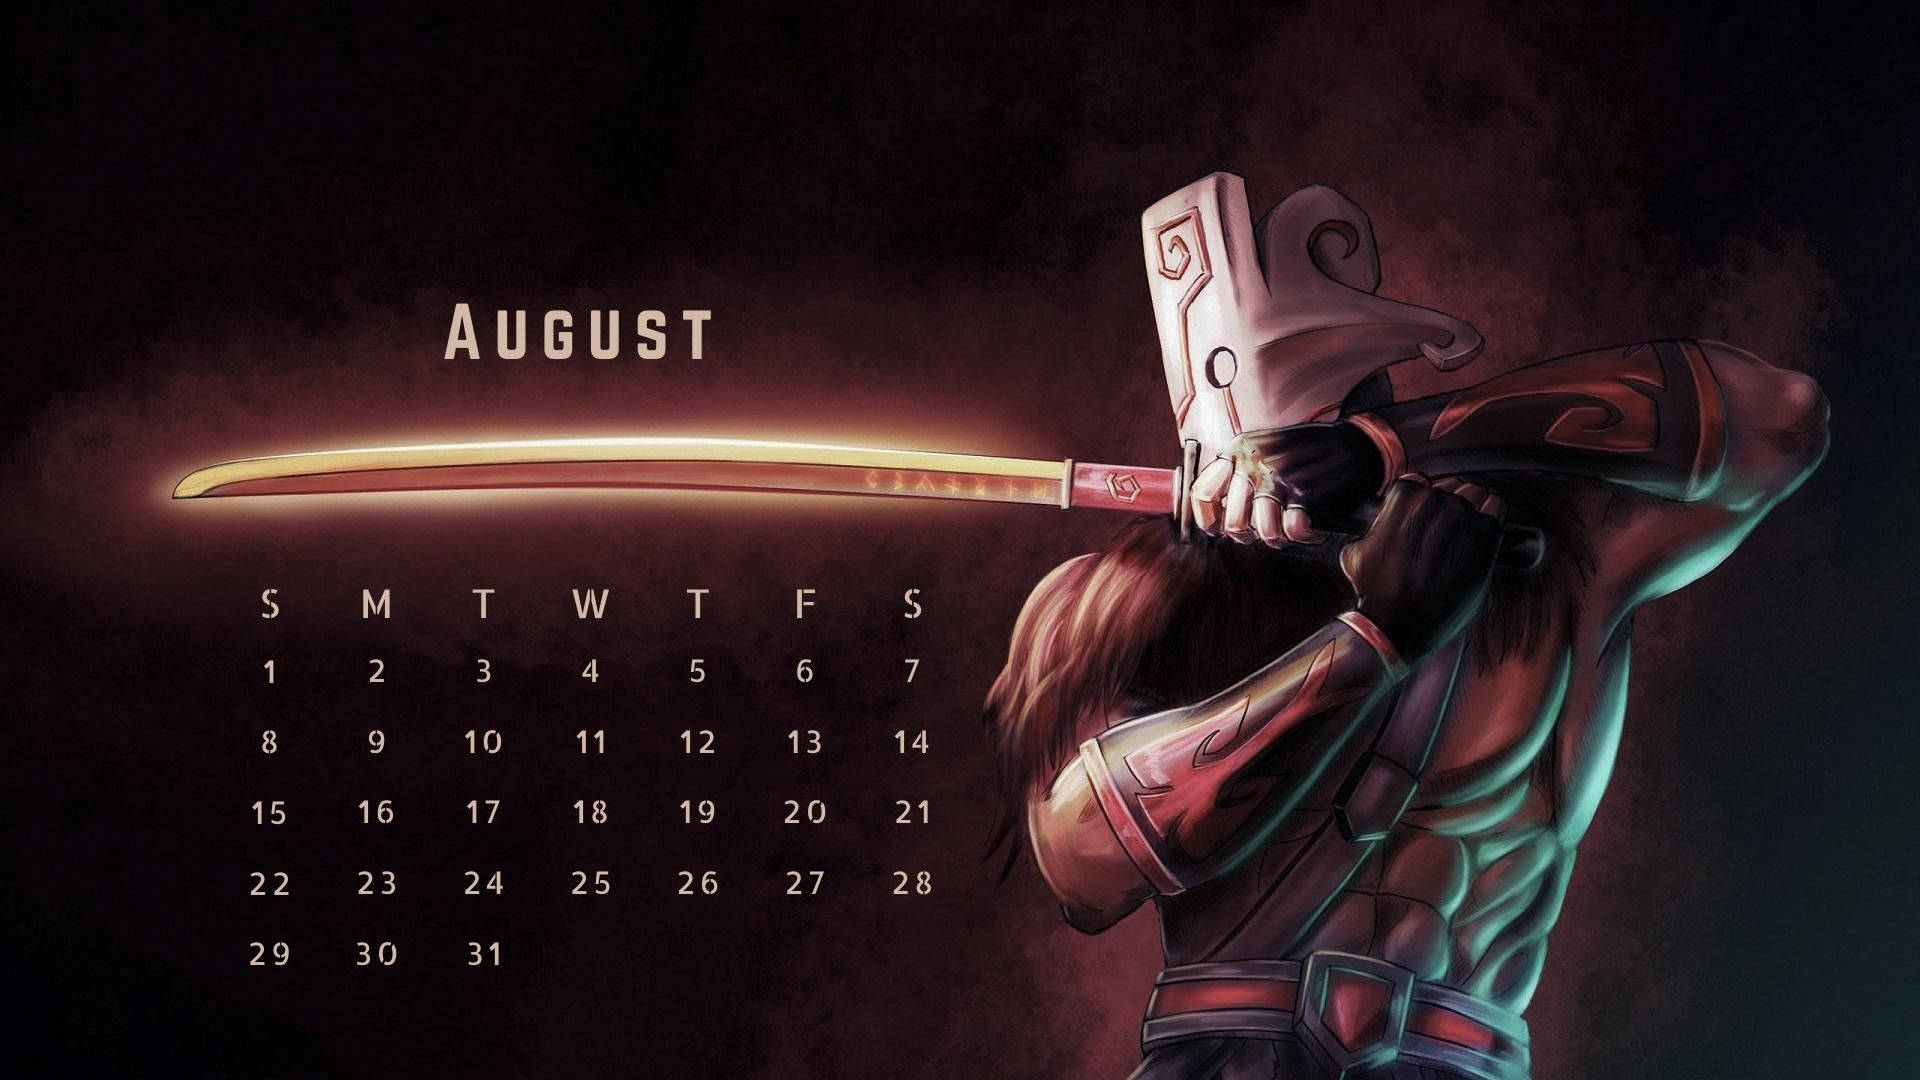 Warrior August 2021 Calendar